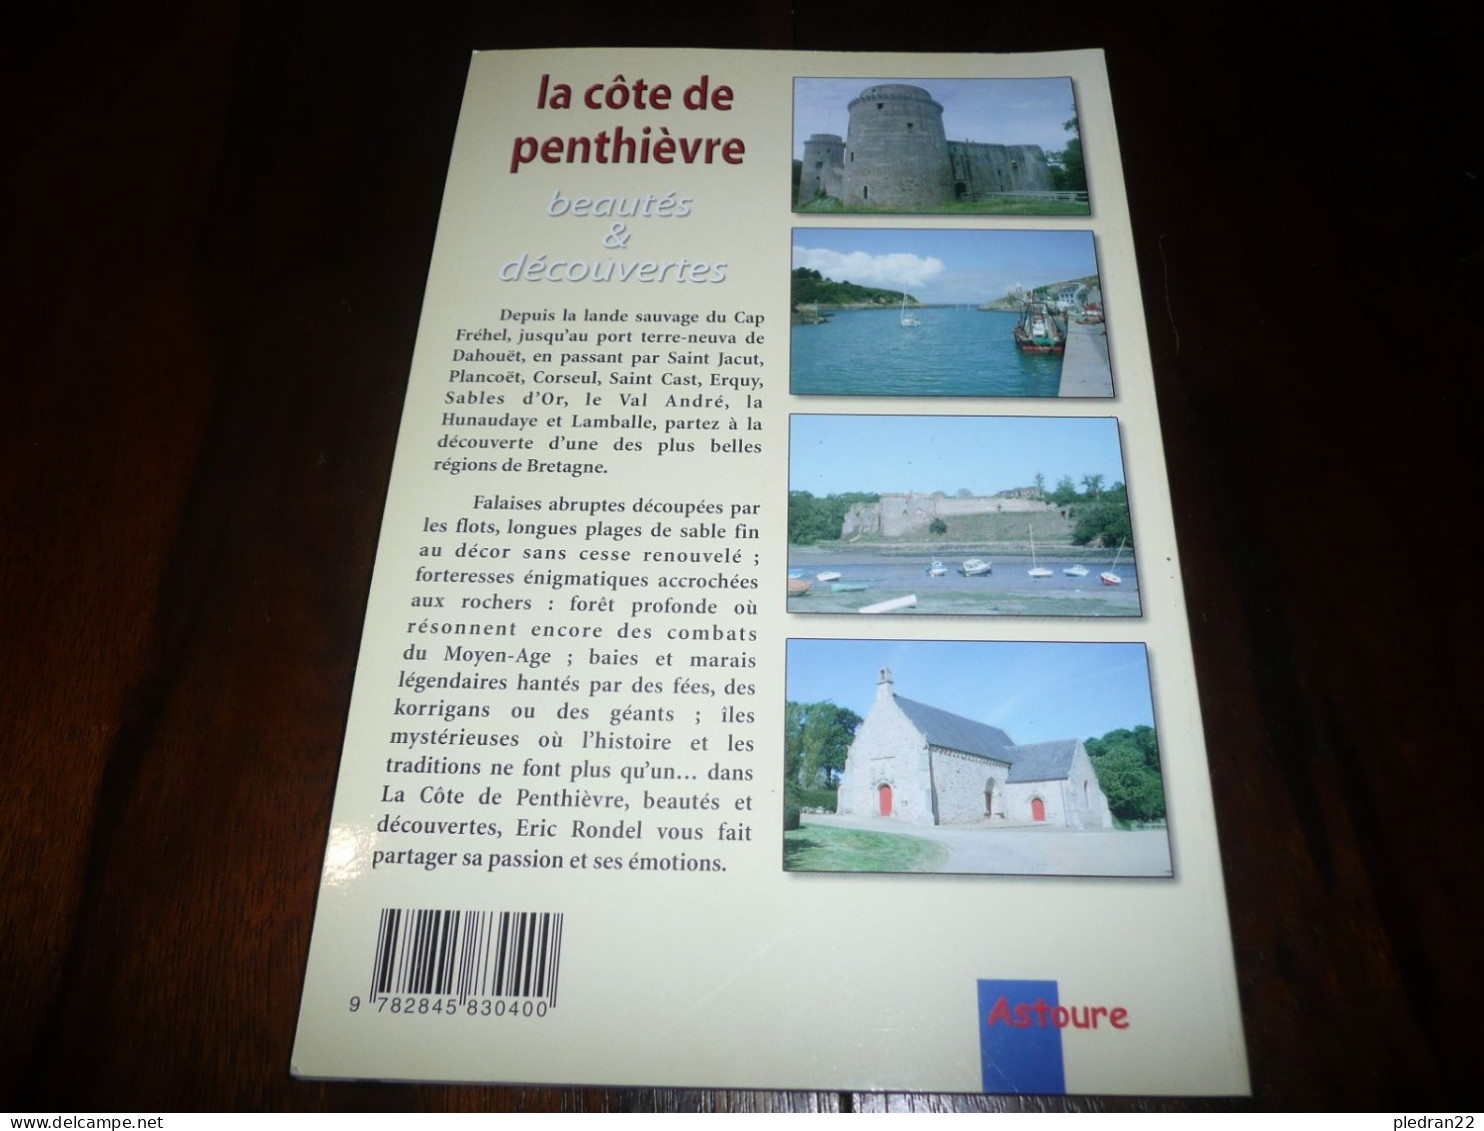 BRETAGNE COTES DU NORD D'ARMOR ERIC RONDEL LA COTE DE PENTHIEVRE BEAUTES & DECOUVERTES EDITIONS ASTOURE 2001 - Bretagne